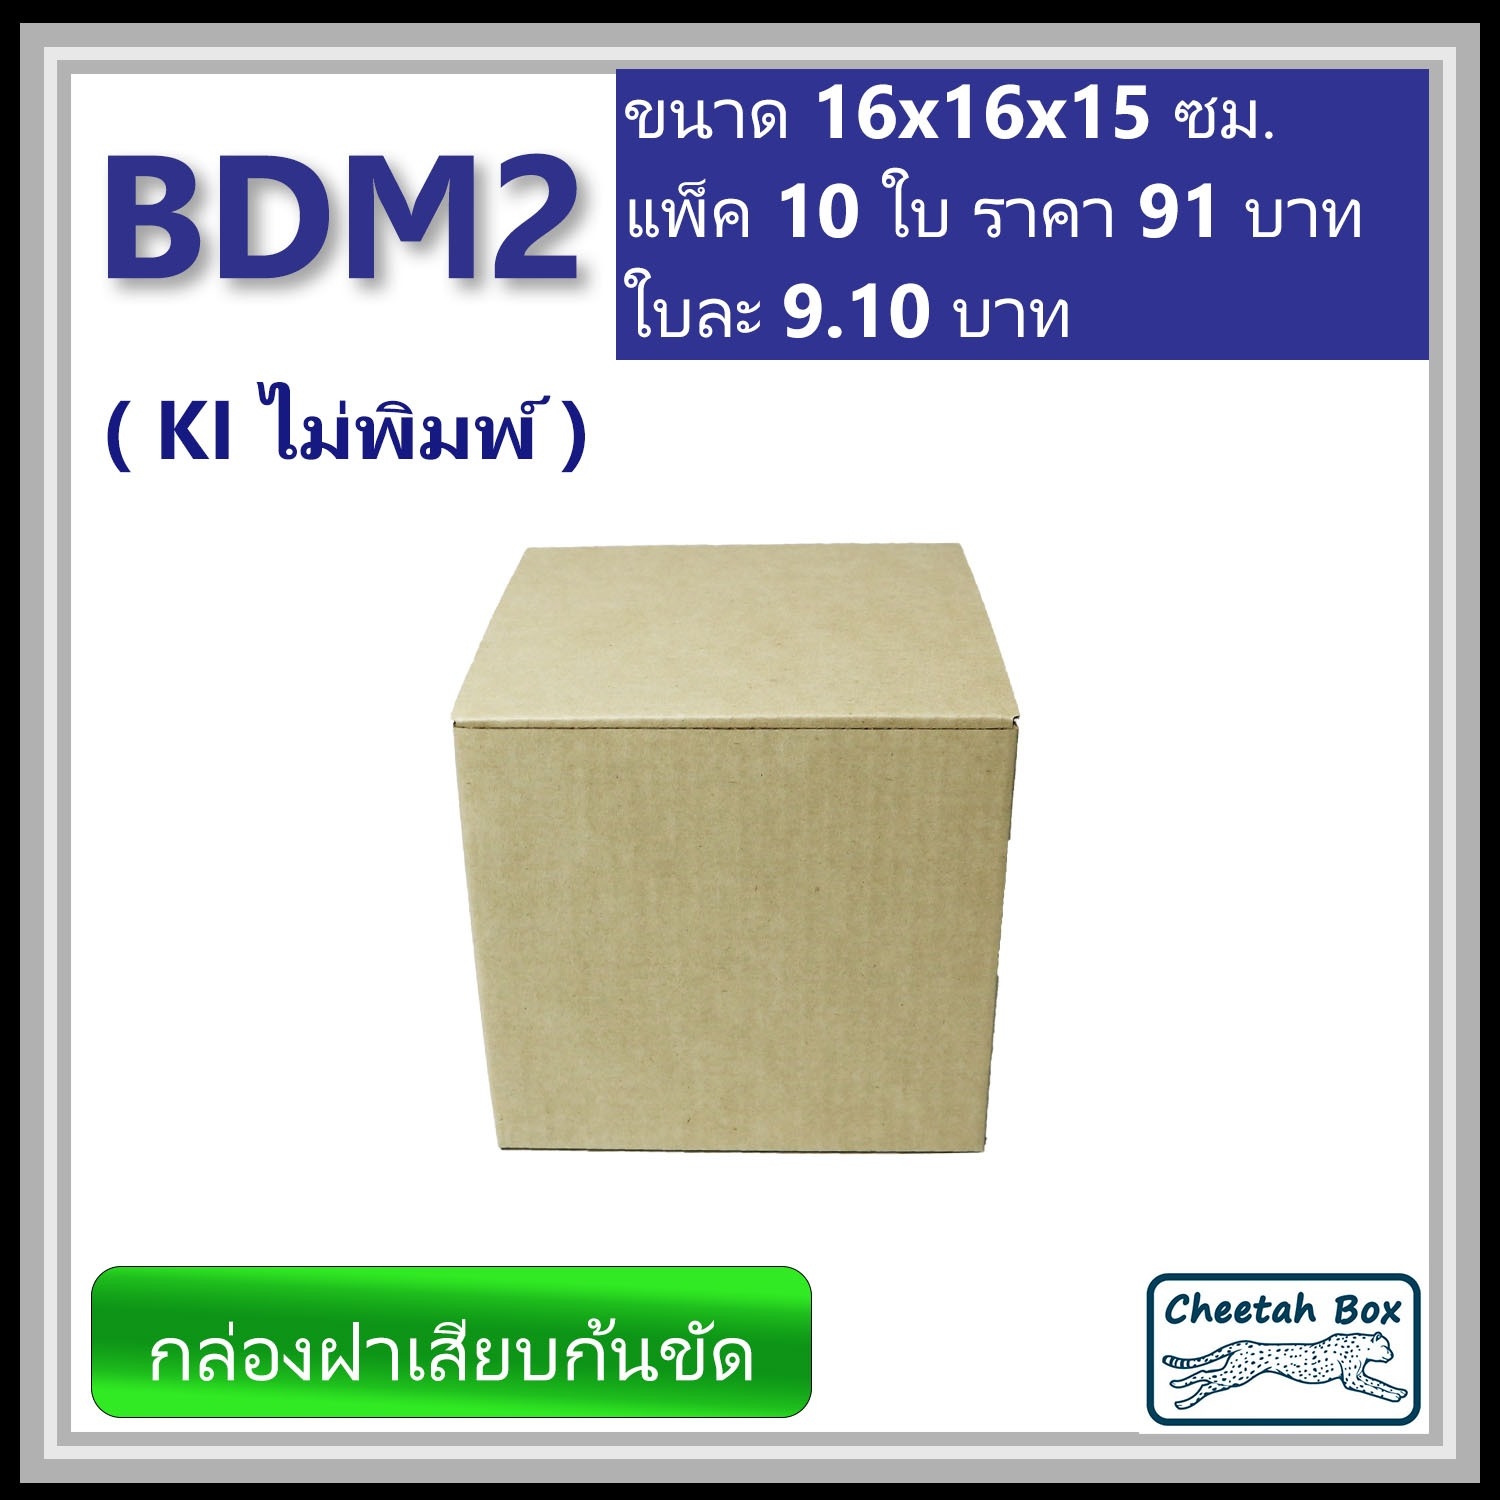 กล่องลูกฟูกไดคัท รหัส BDM2 ไม่พิมพ์ (Die-cut Box) ขนาด 16W x 16L x 15H cm.